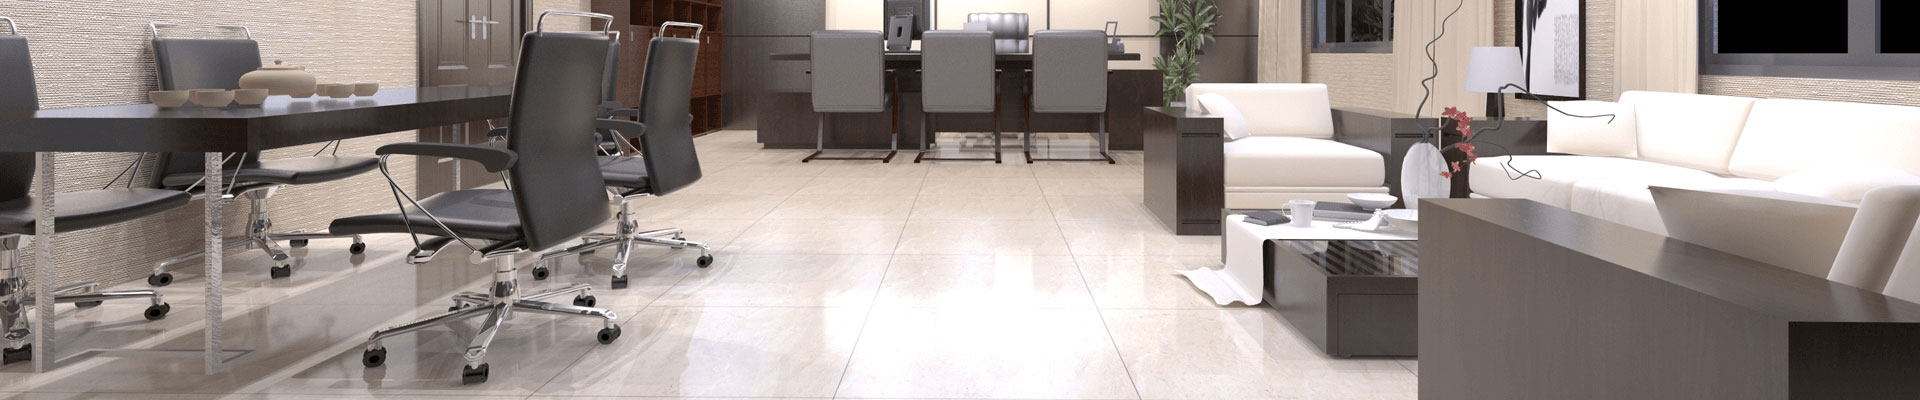 Office Floor Tiles Wholesale Exterior Tiles Manufacturer & Vendor Page 5